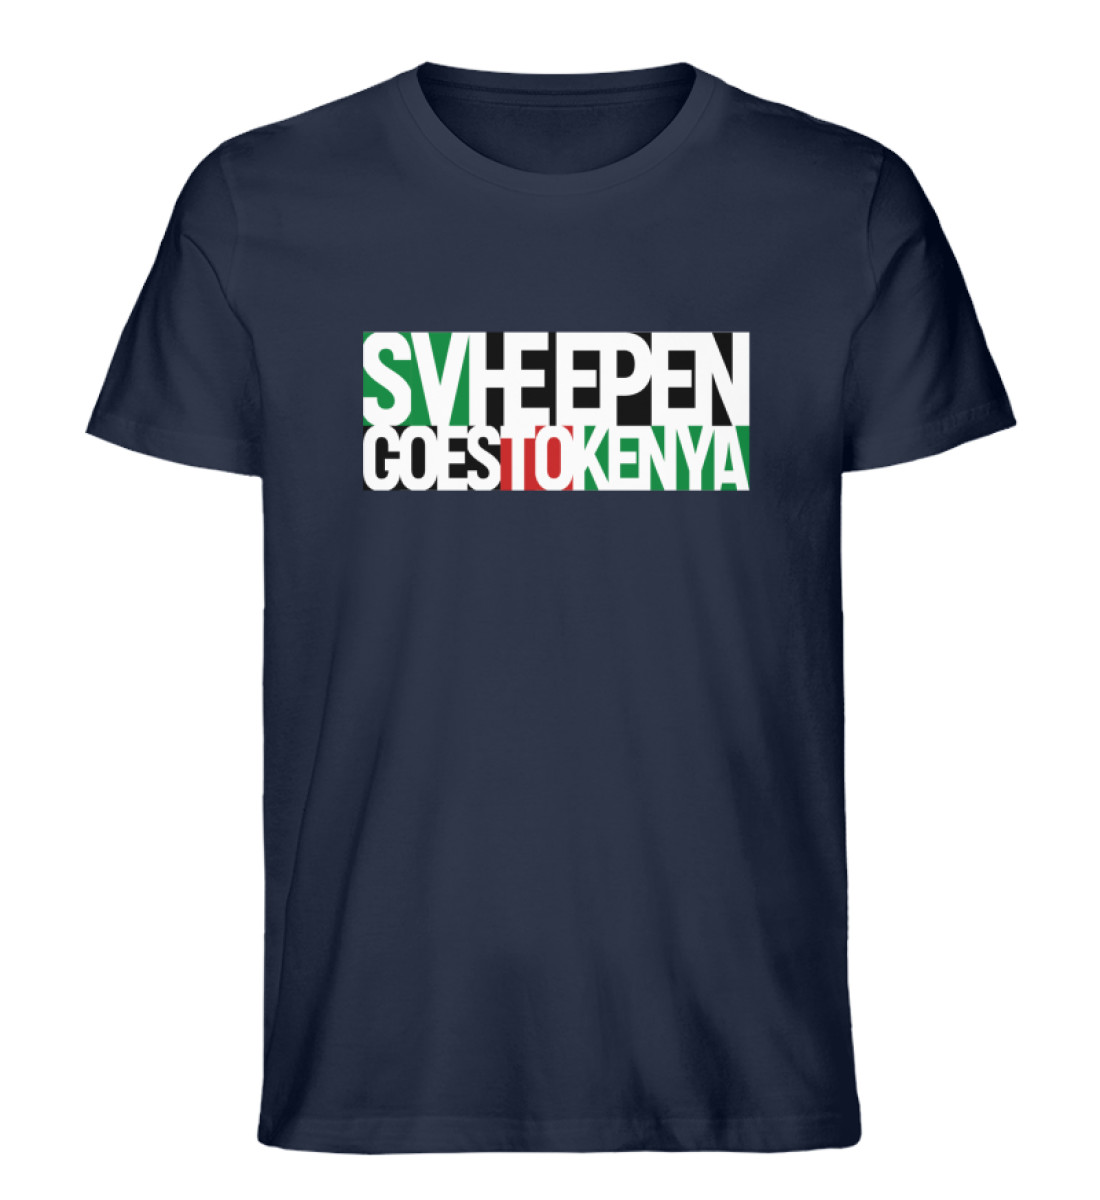 Heepen goes to kenya - Herren Premium Organic Shirt-6887